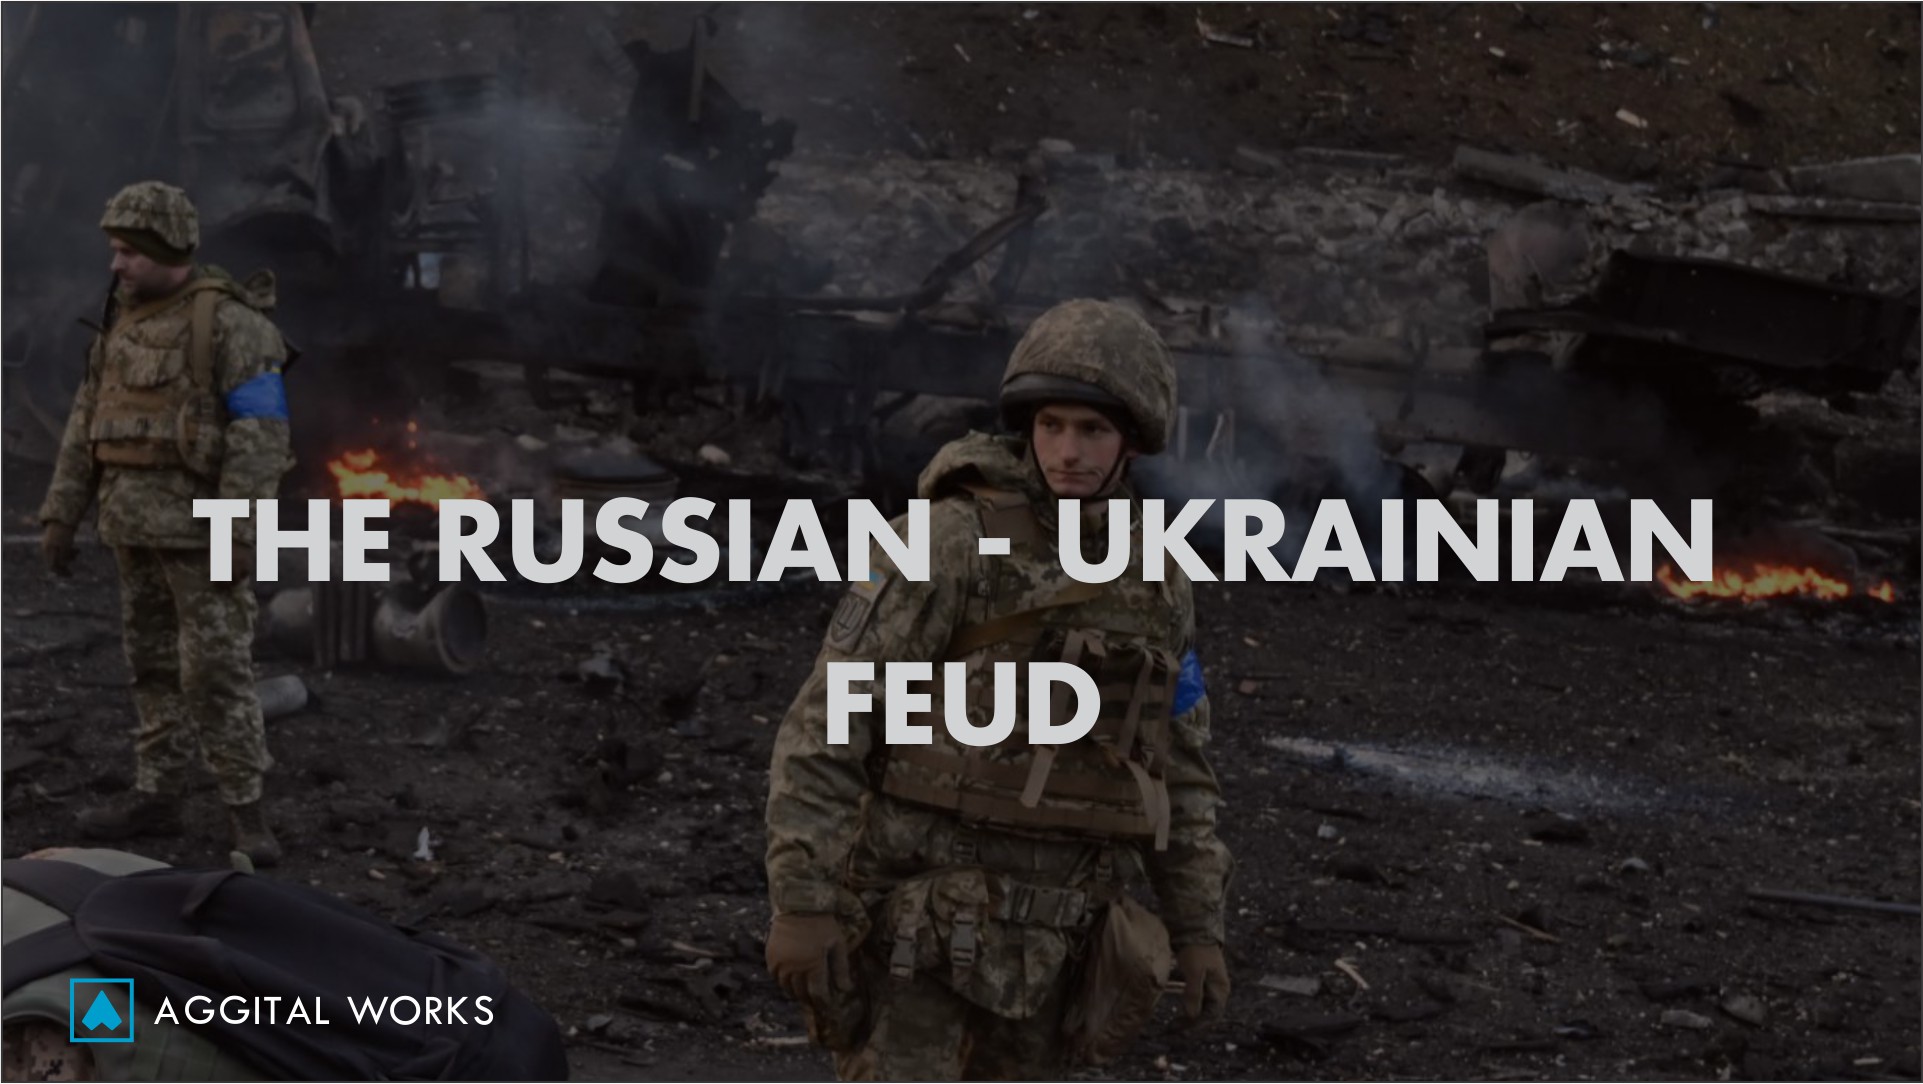 the russian/ukrainian feud